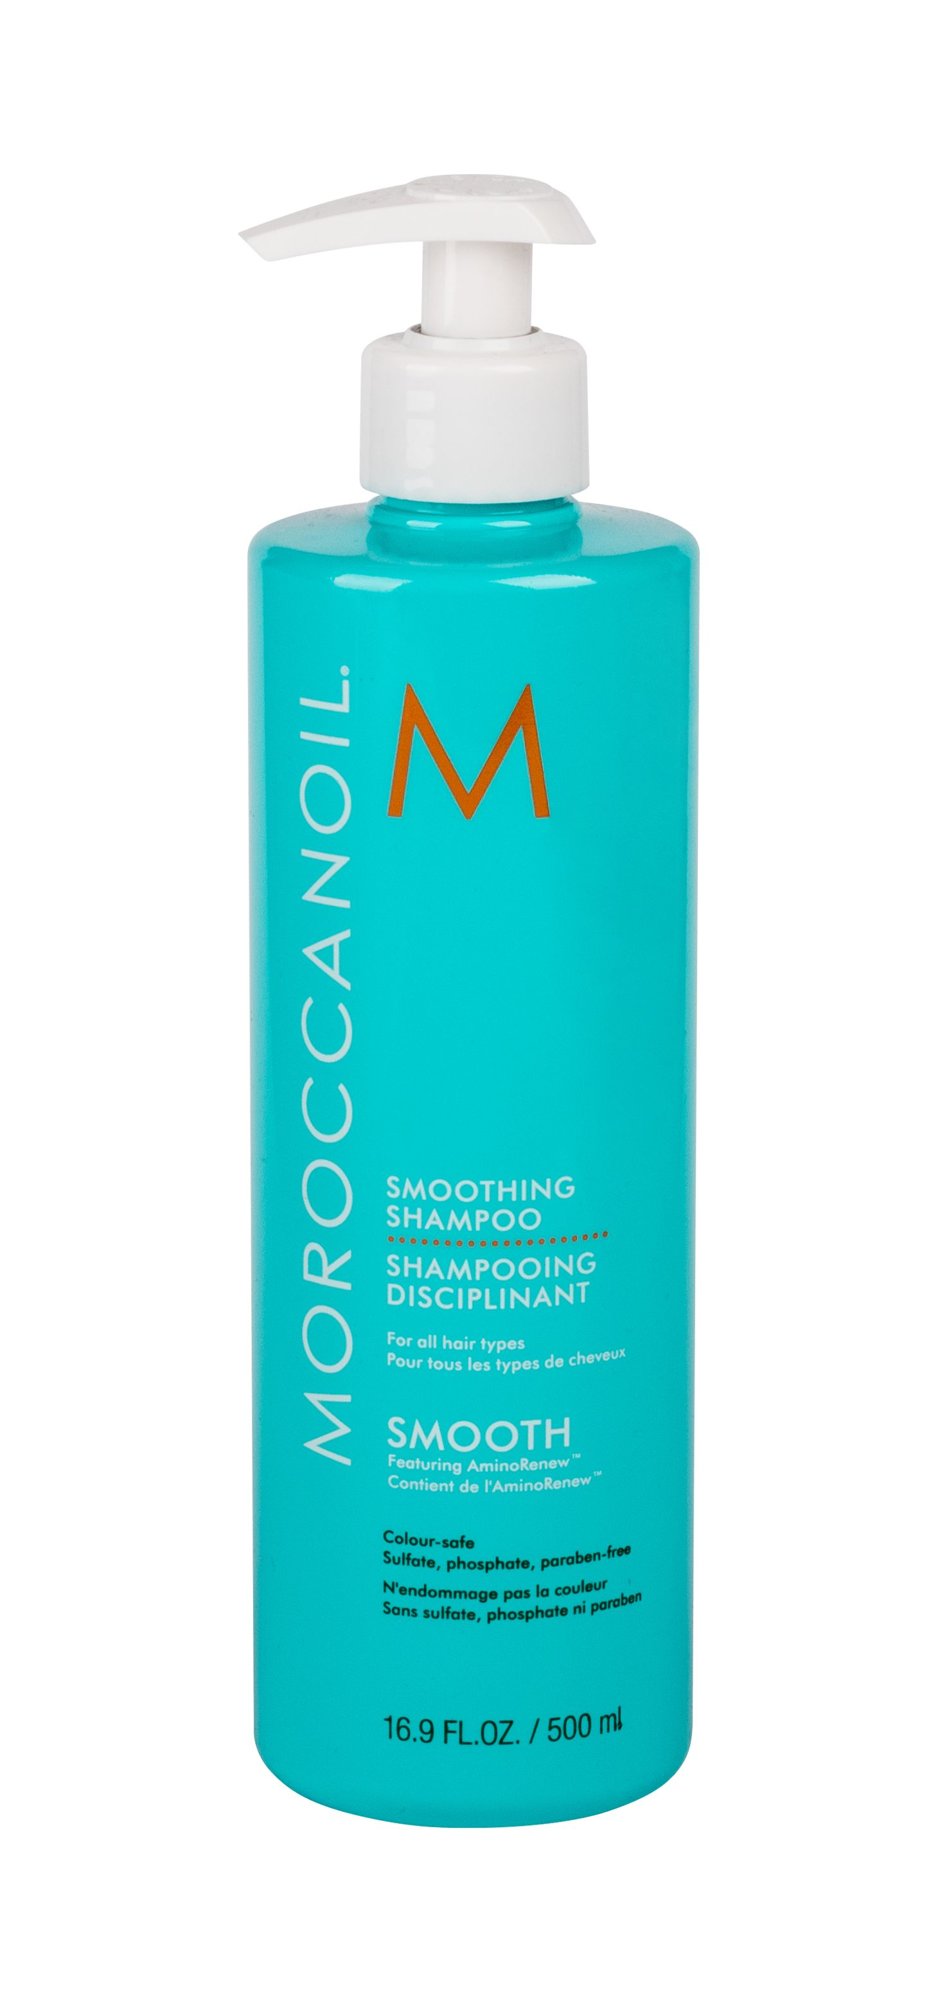 Moroccanoil Smooth šampūnas